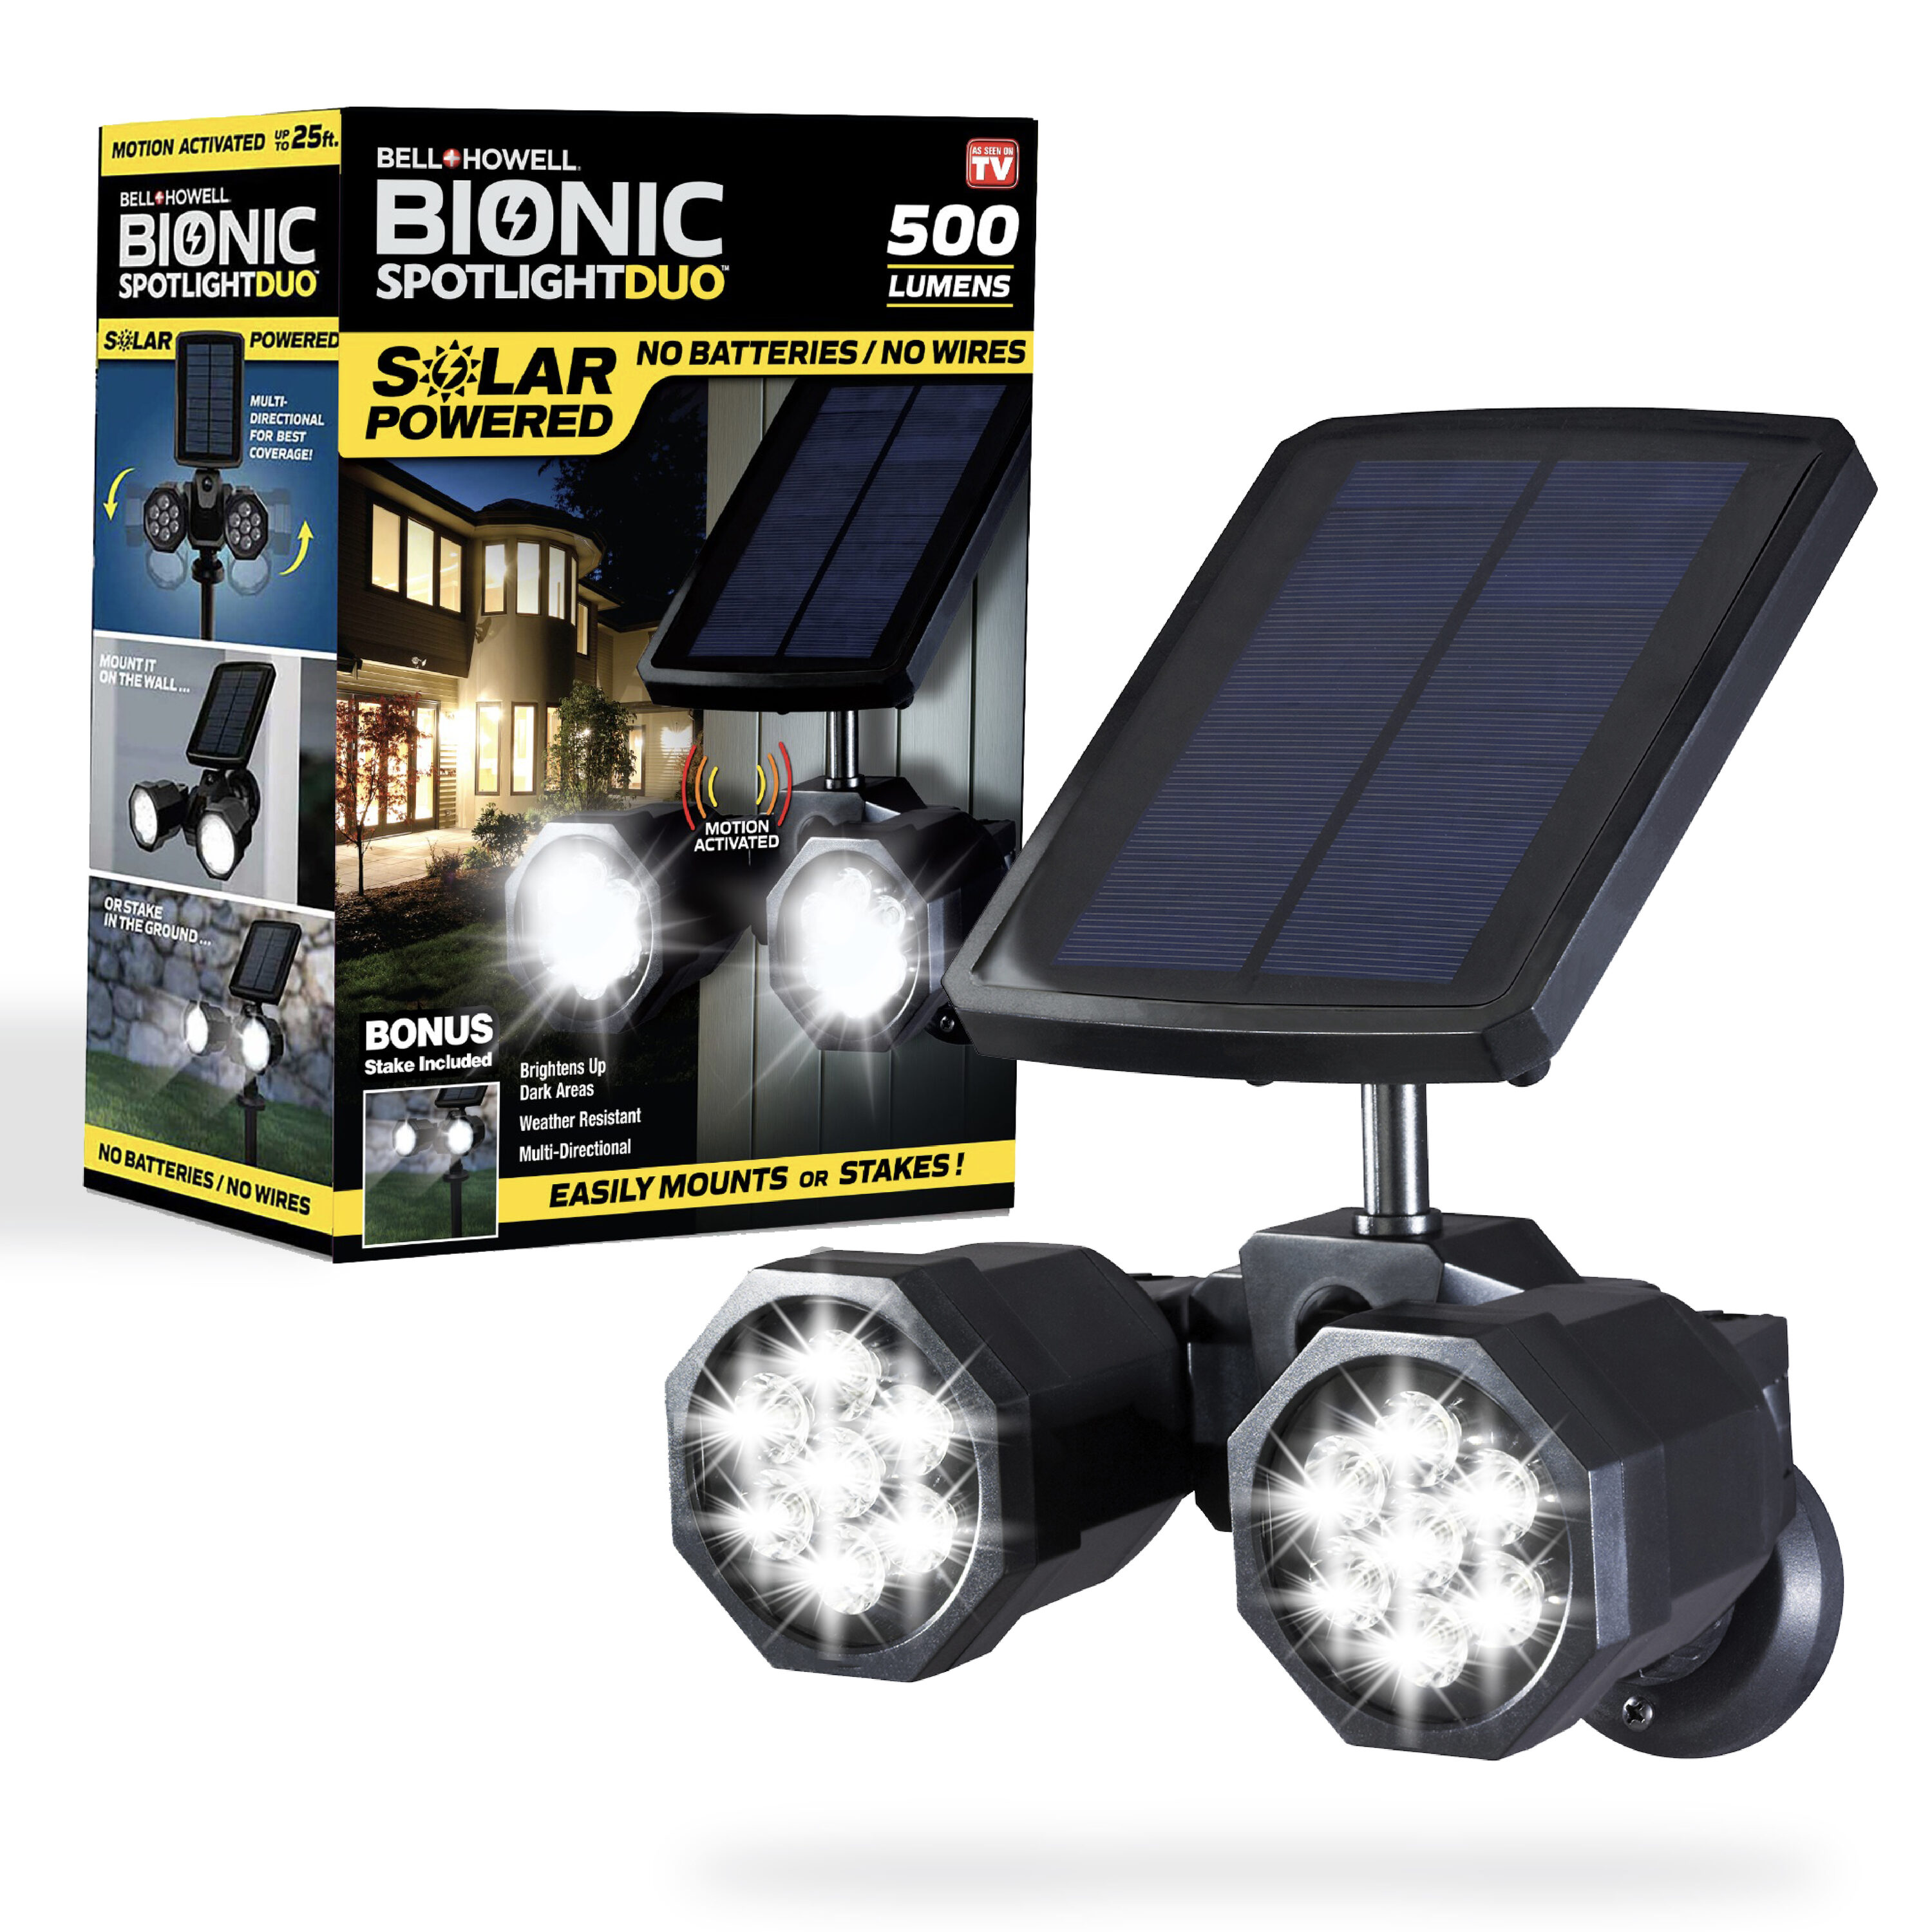 BELL + HOWELL Bionic Lighting 500-Lumen 6-Watt Black Solar LED Spot Light Motion Sensor in the Flood Lights department at Lowes.com